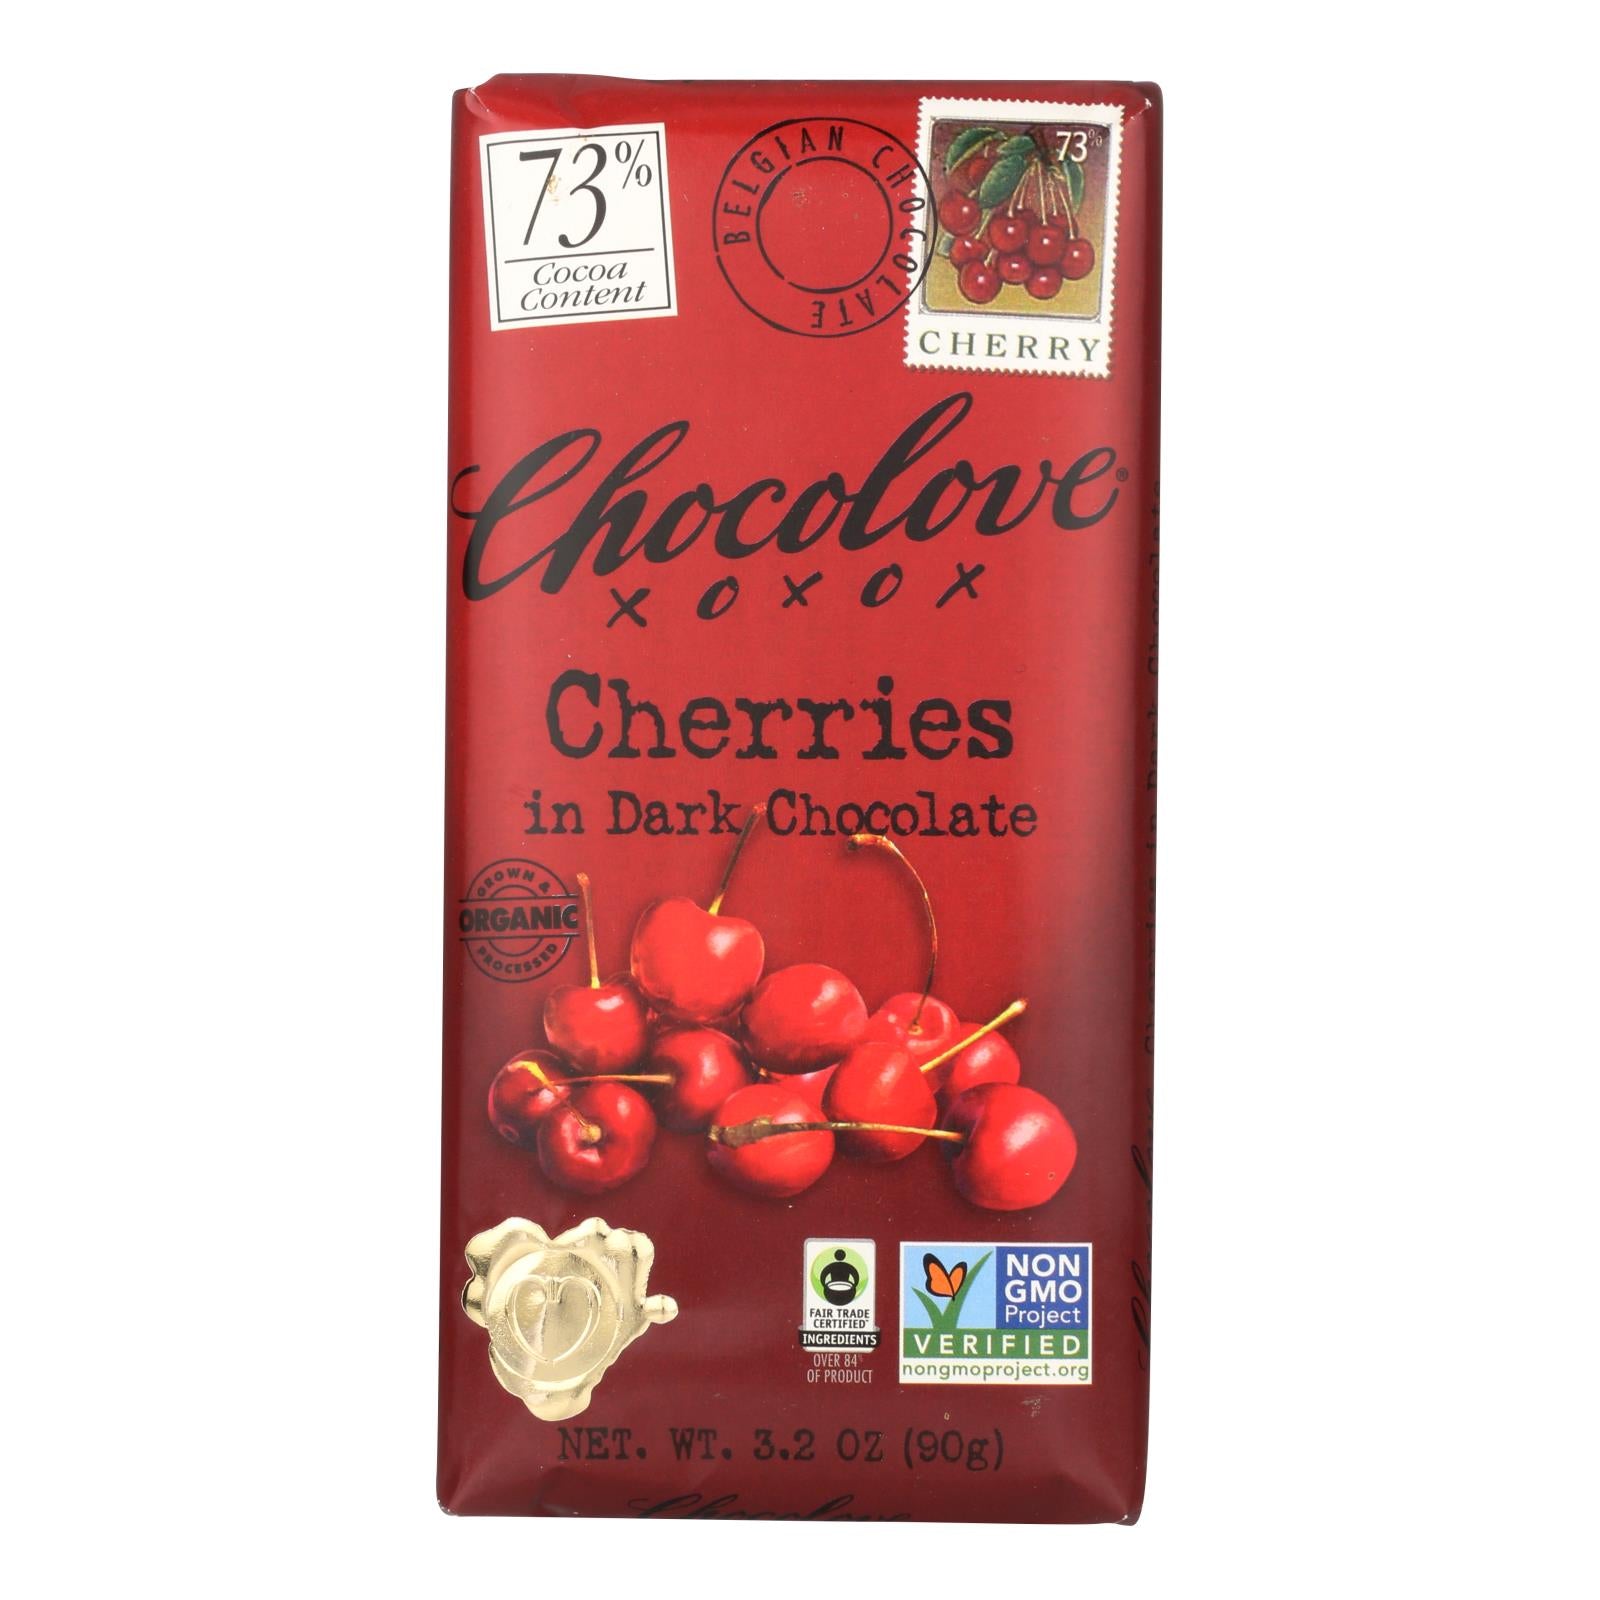 Chocolove Xoxox - Premium Chocolate Bar - Organic Dark Chocolate - Fair Trade Cherries - 3.2 oz Bars - Case of 12